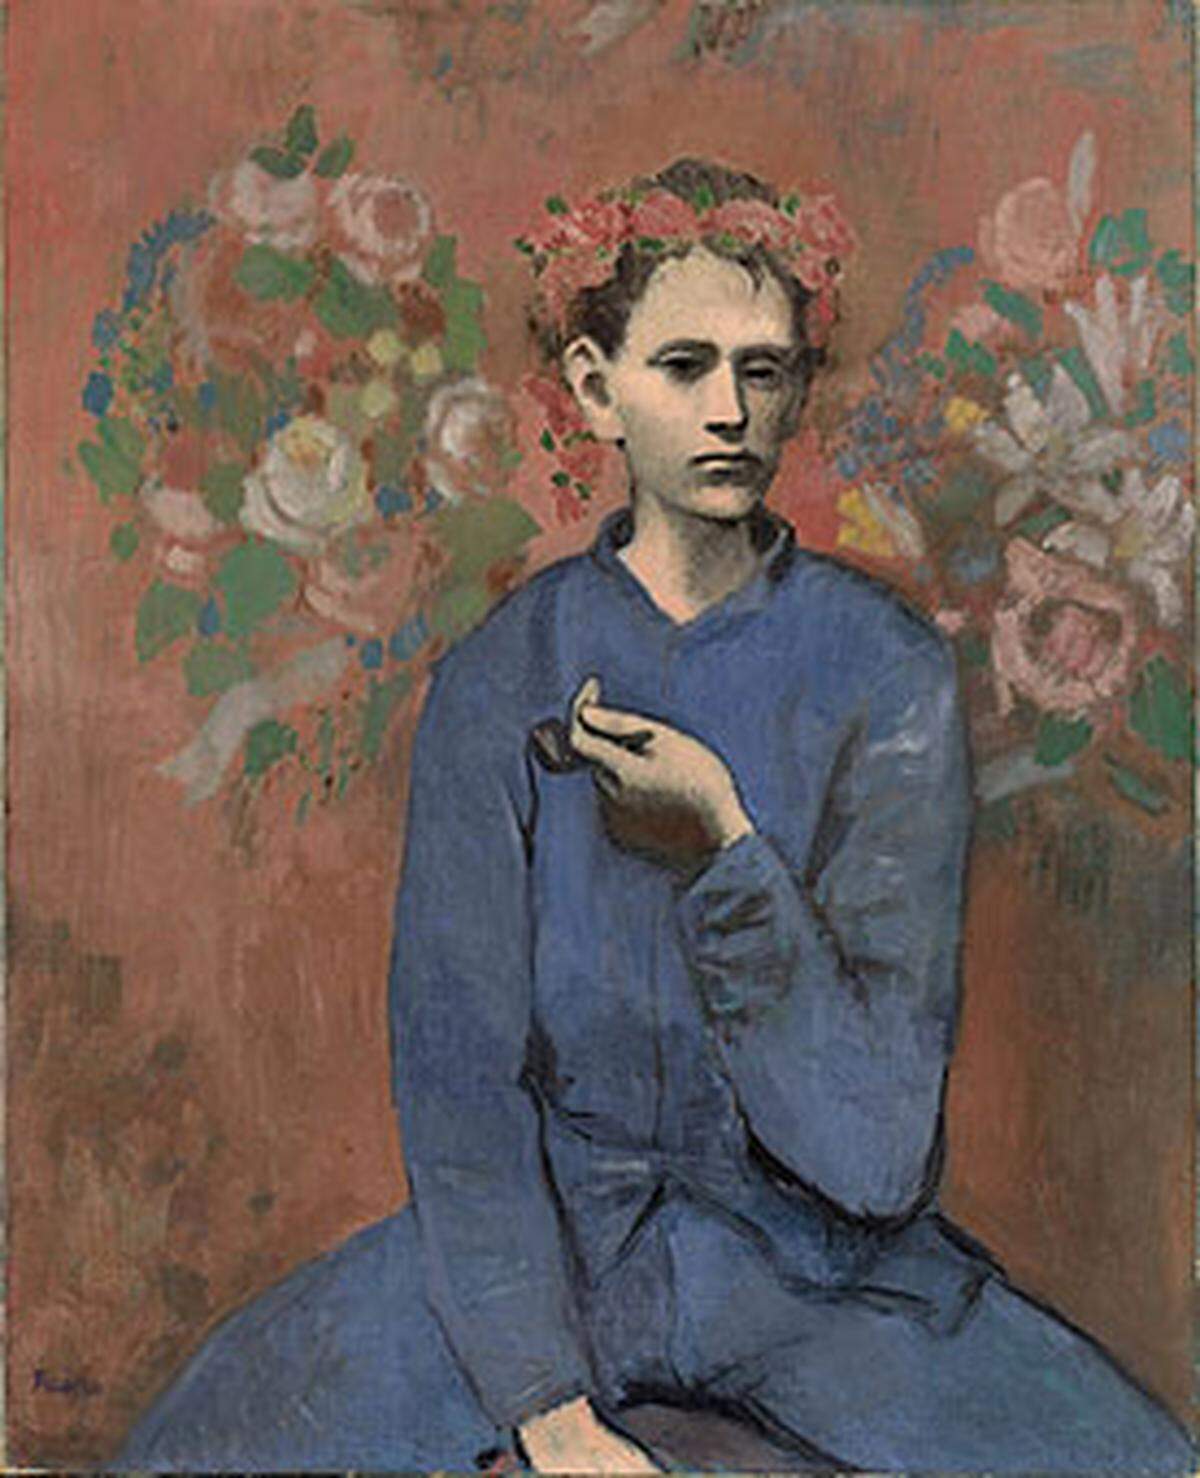 An vierter Stelle liegt der "Junge mit Pfeife" von Pablo Picasso. Es wurde für über 104 Millionen Dollar verkauft. Das 1905 entsandene Bild stammt aus Picassos sogenannter Rosa Periode.